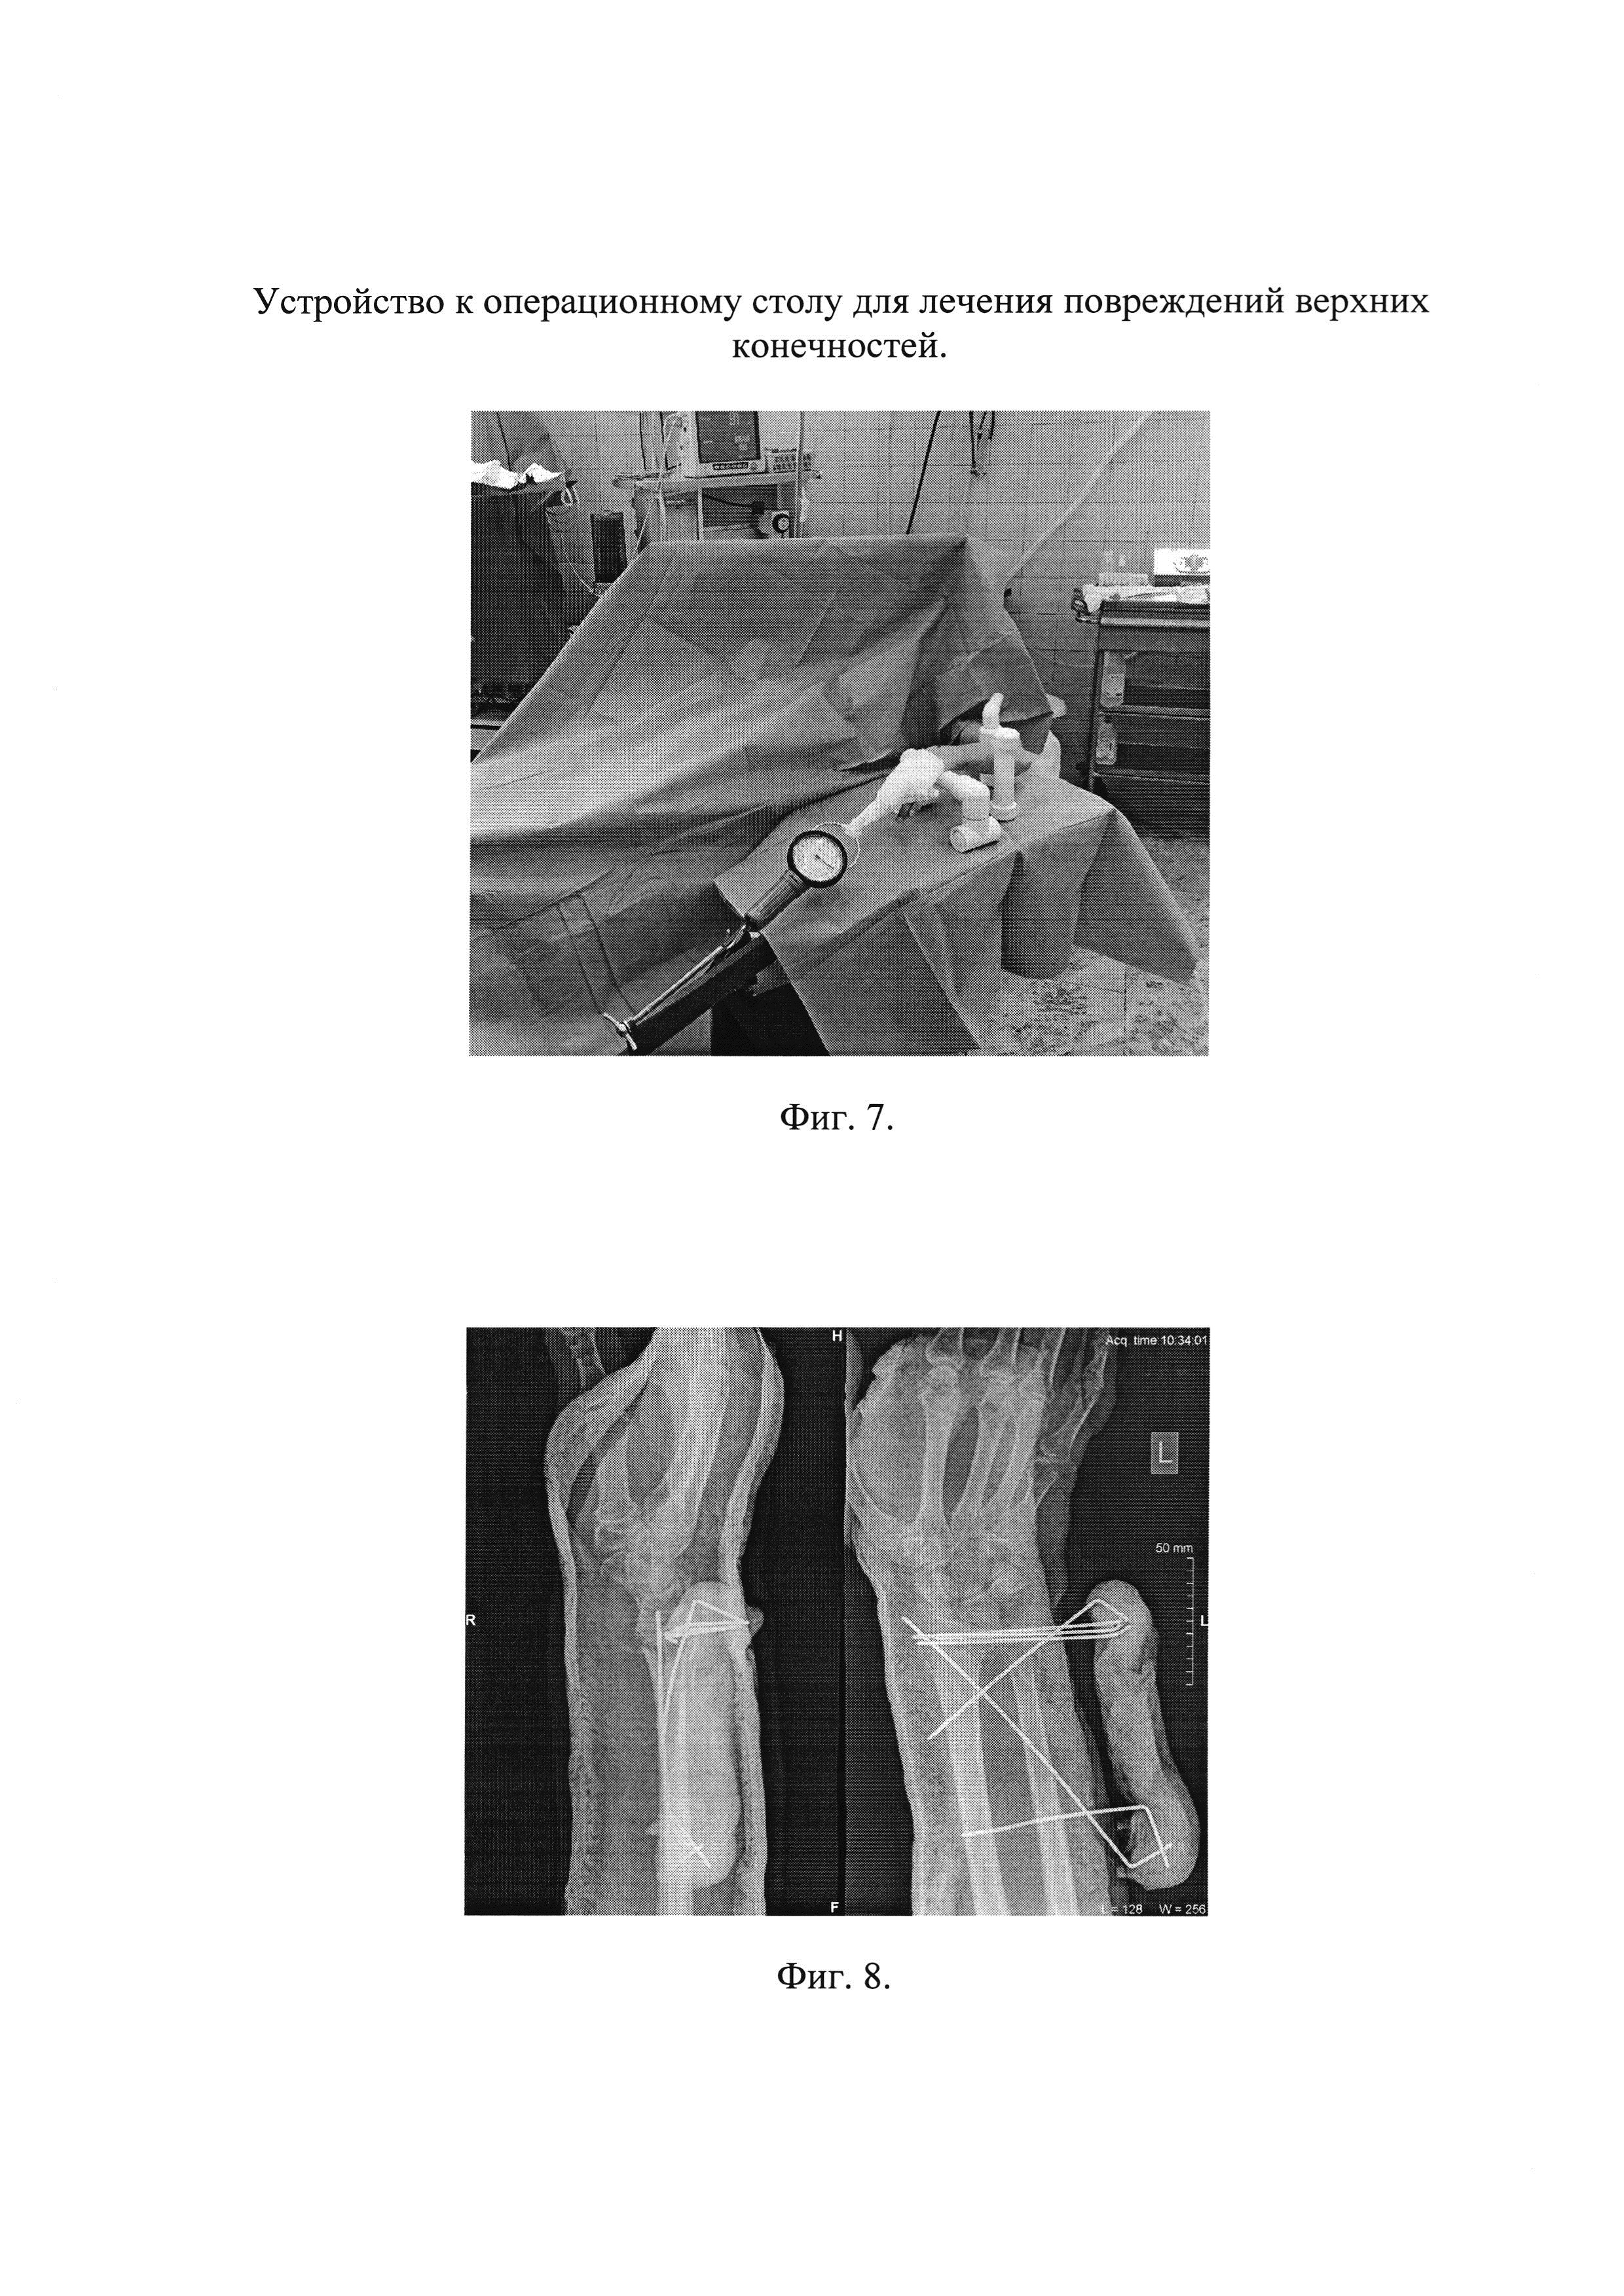 Устройство к операционному столу для лечения повреждений верхних конечностей